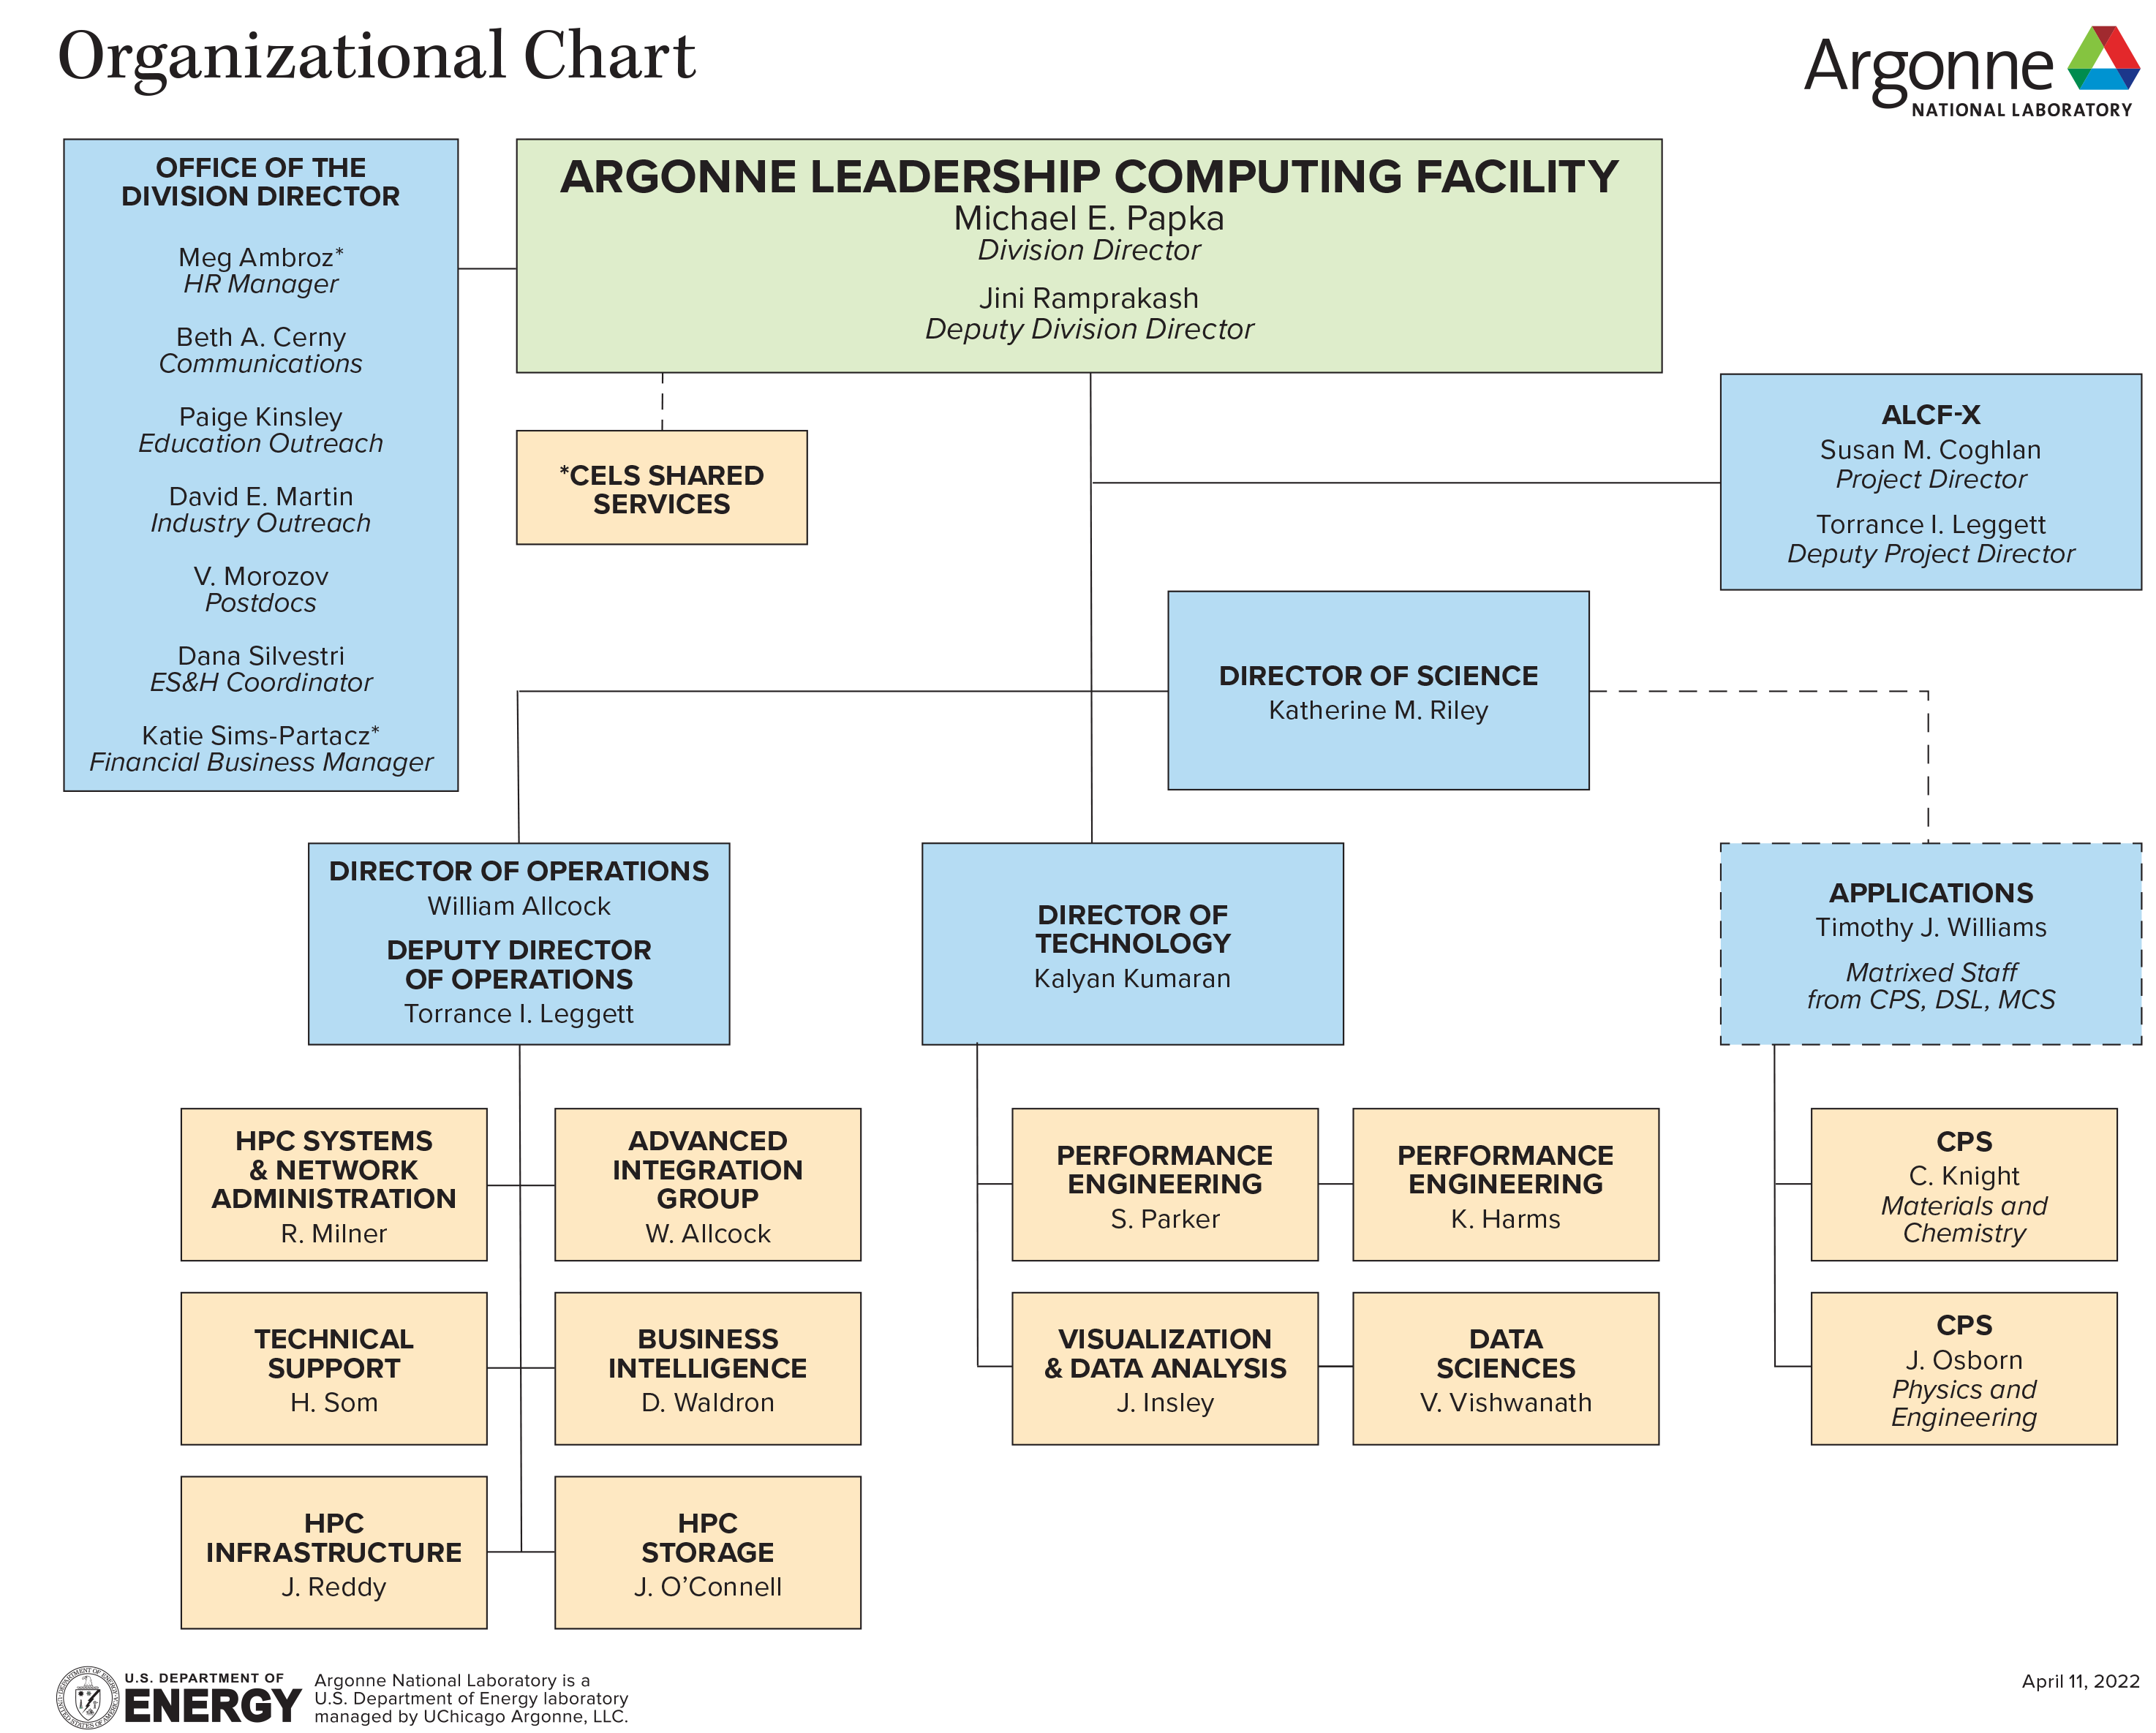 ALCF Organization Chart